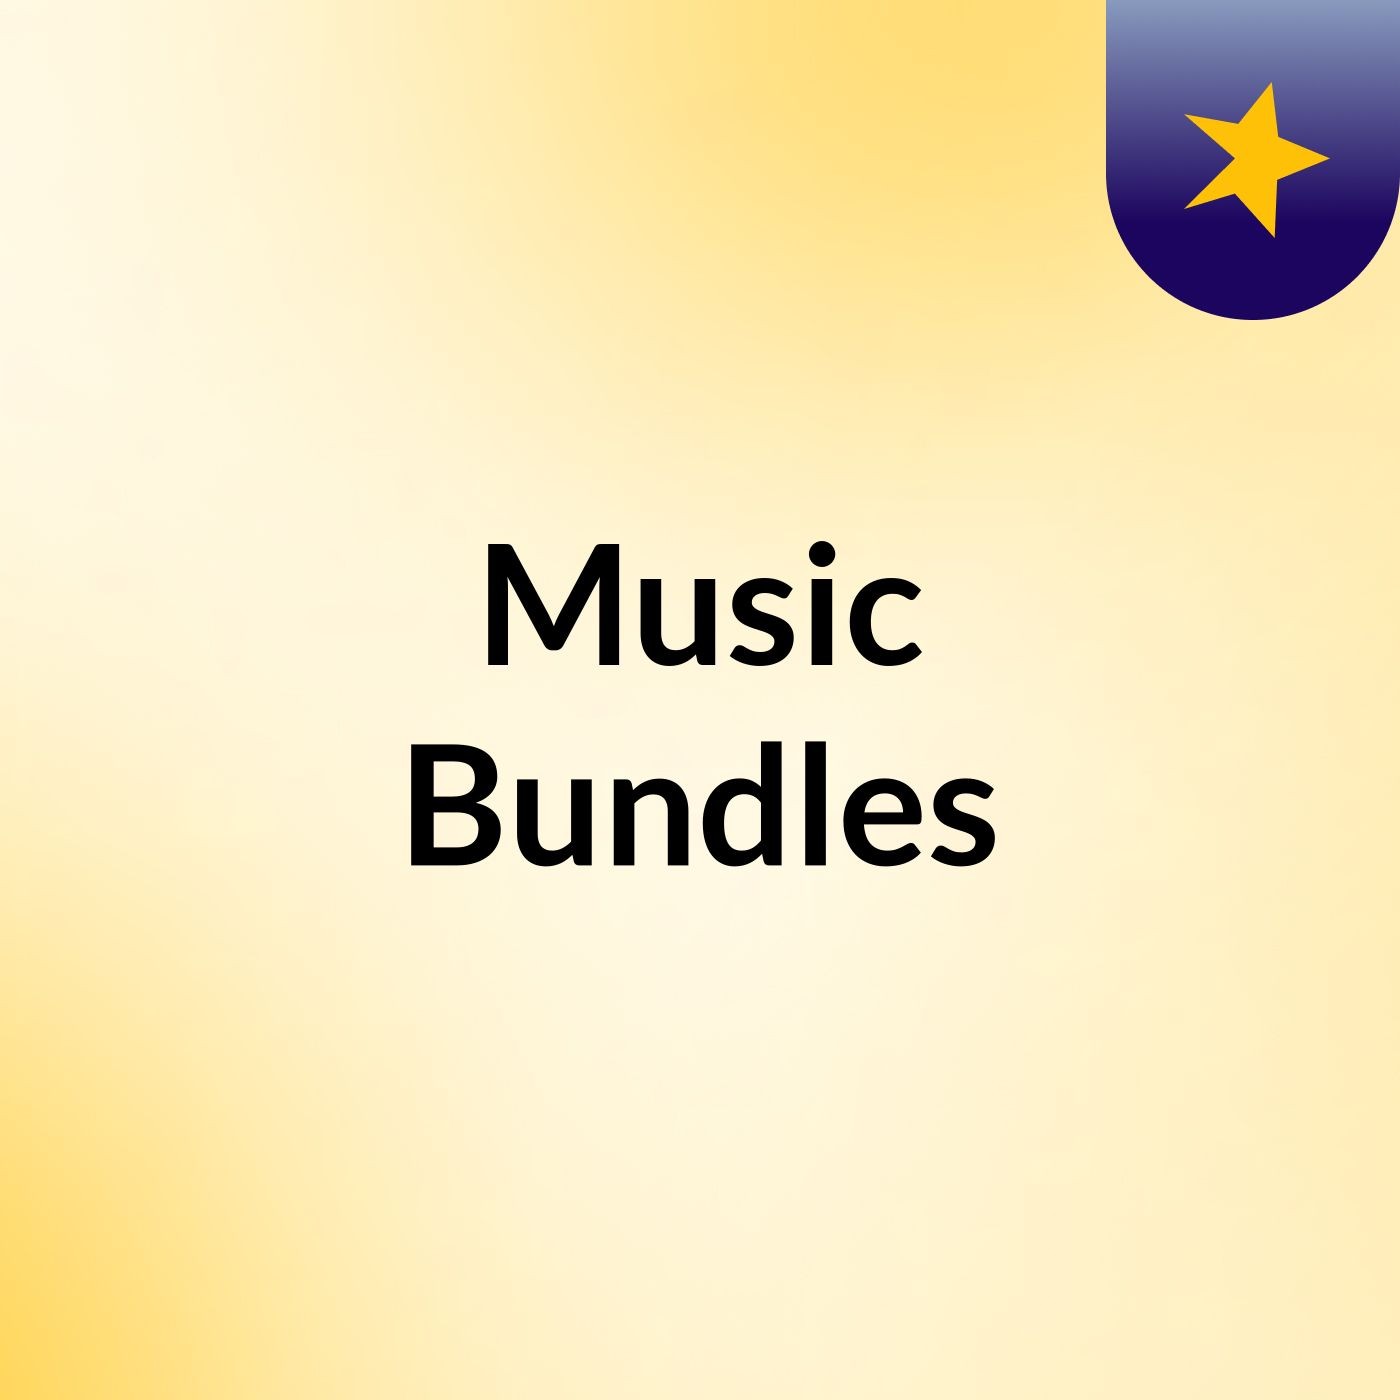 Music Bundles